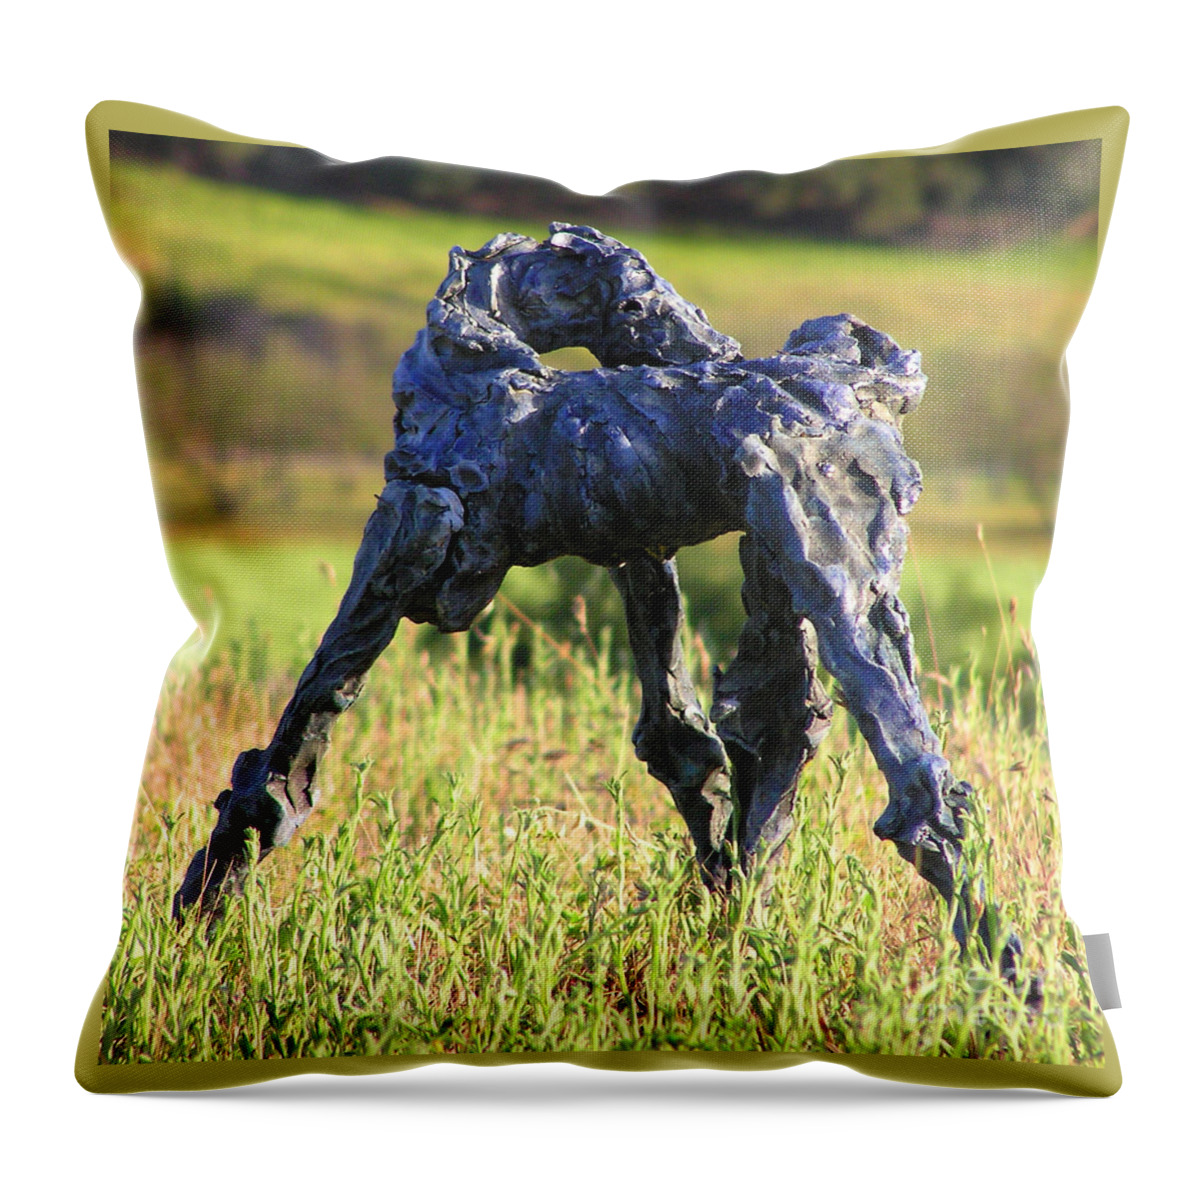 Horse Sculpture Throw Pillow featuring the sculpture Blue Bolt by Valerie Freeman